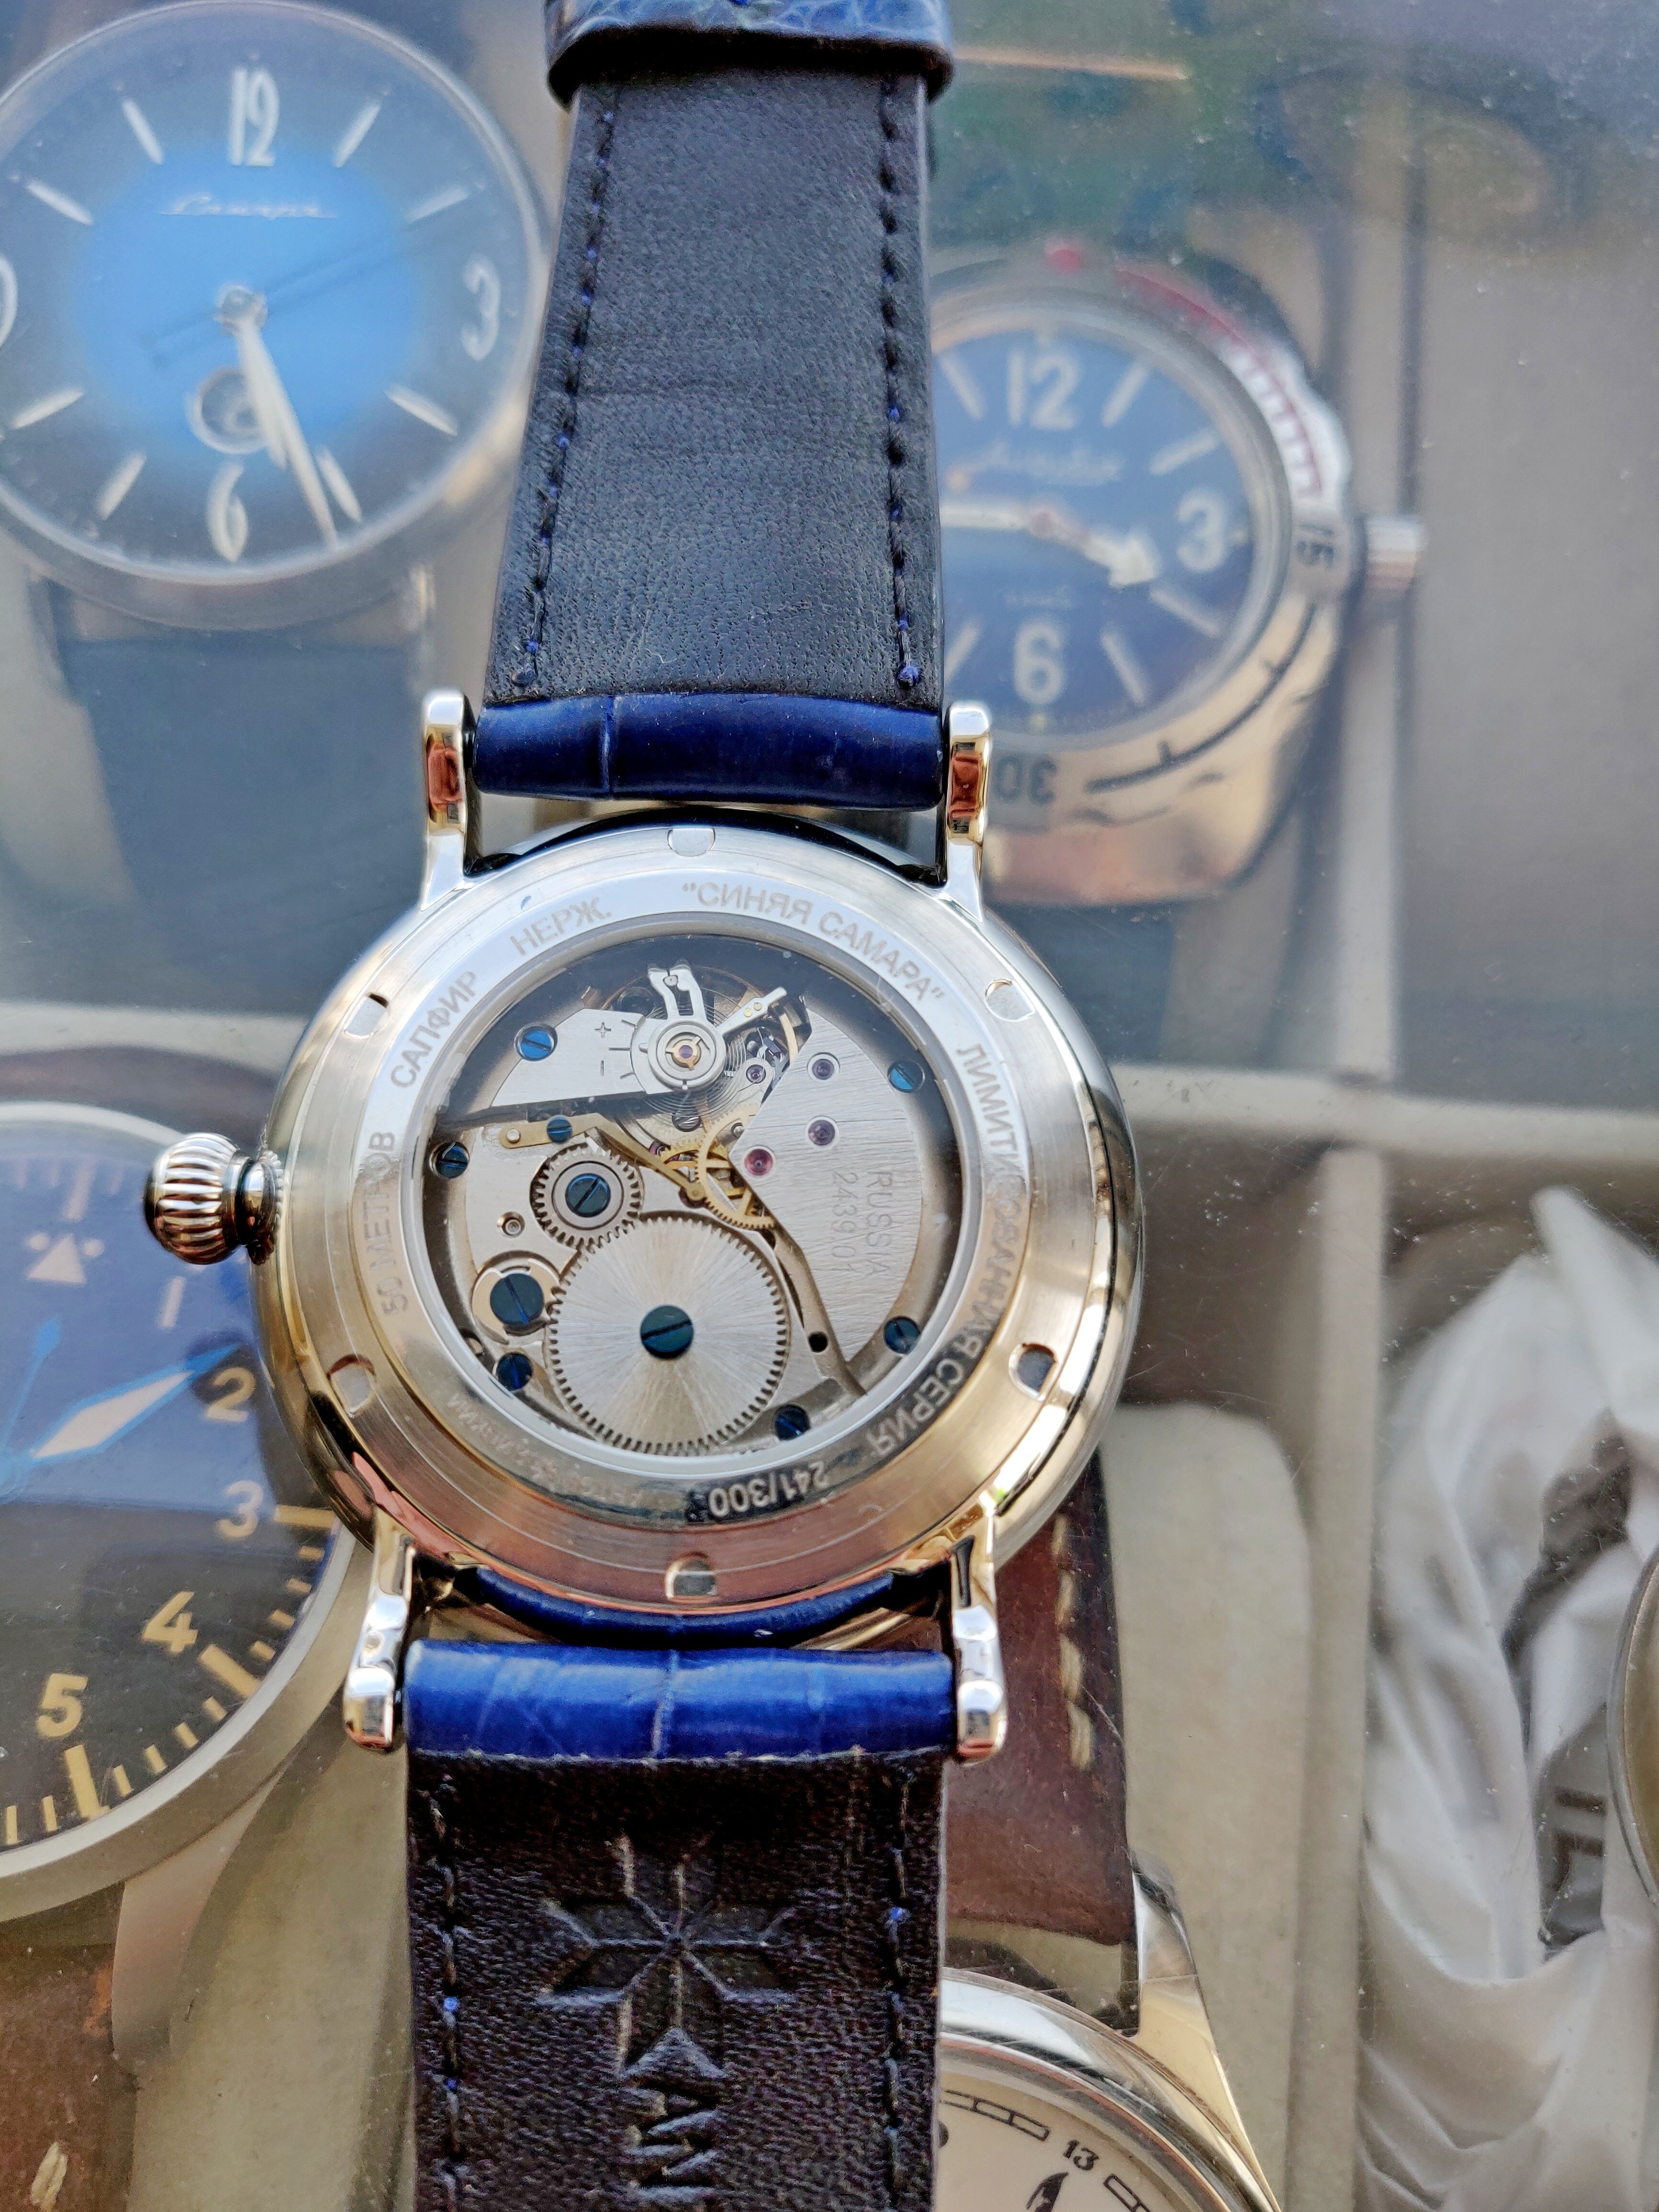 Недорогие часы в самаре. Часы синяя Самара. Часы Самара синие мужские. Часы Слава голубые. Часы синяя Самара купить.